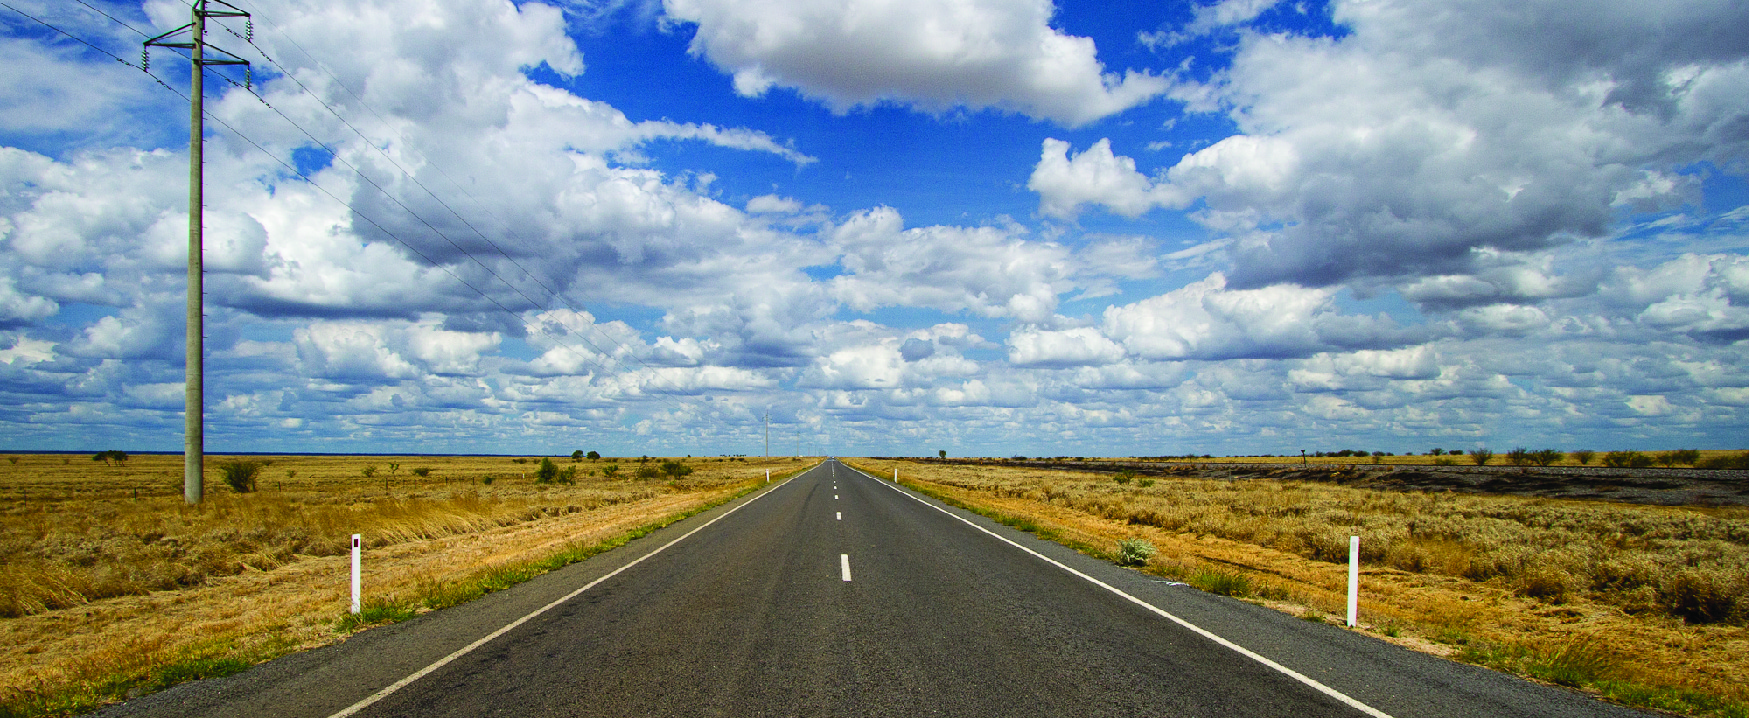 这张照片往下看一条开阔道路的中间，天空中有云彩，道路两边都有开阔的景观。